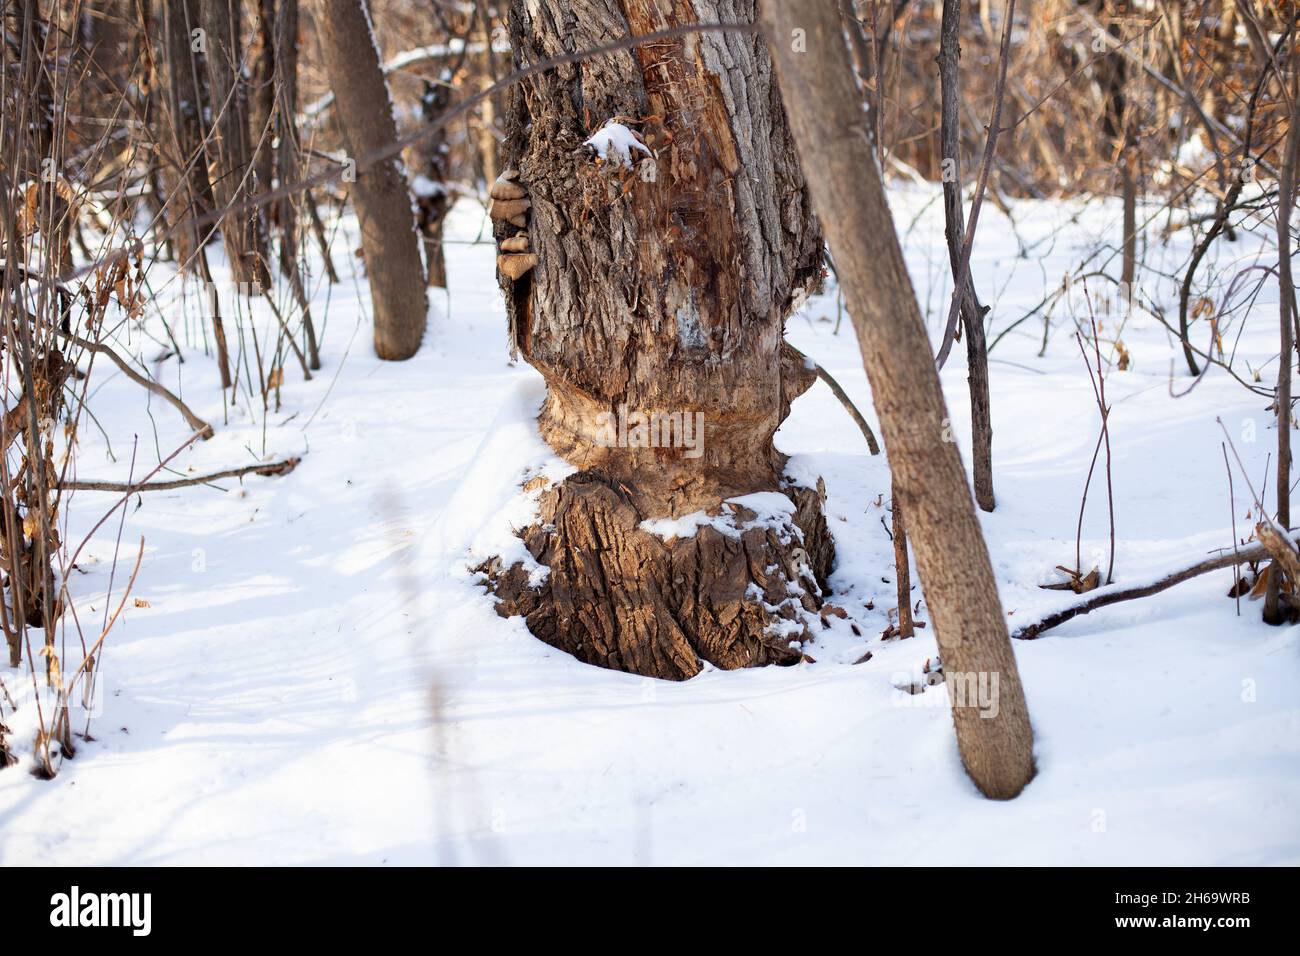 Le vieux arbre pousse dans la forêt d'hiver.Gros plan du tronc d'arbre avec des marques des dents du castor et recouvert de neige, les jeunes arbres poussent à proximité Banque D'Images